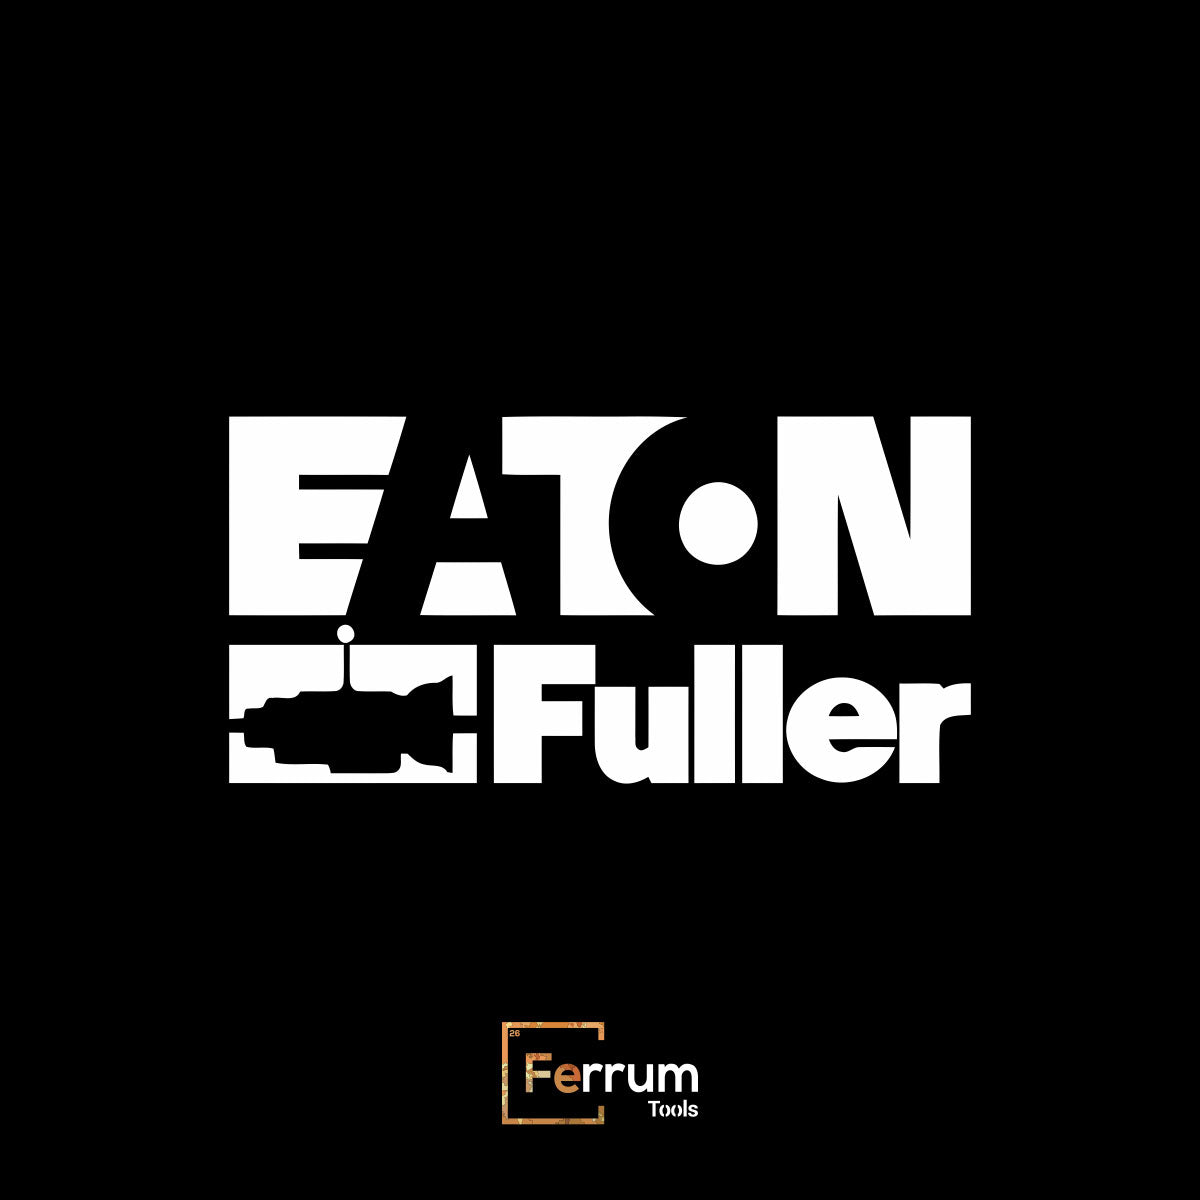 EATON FULLER